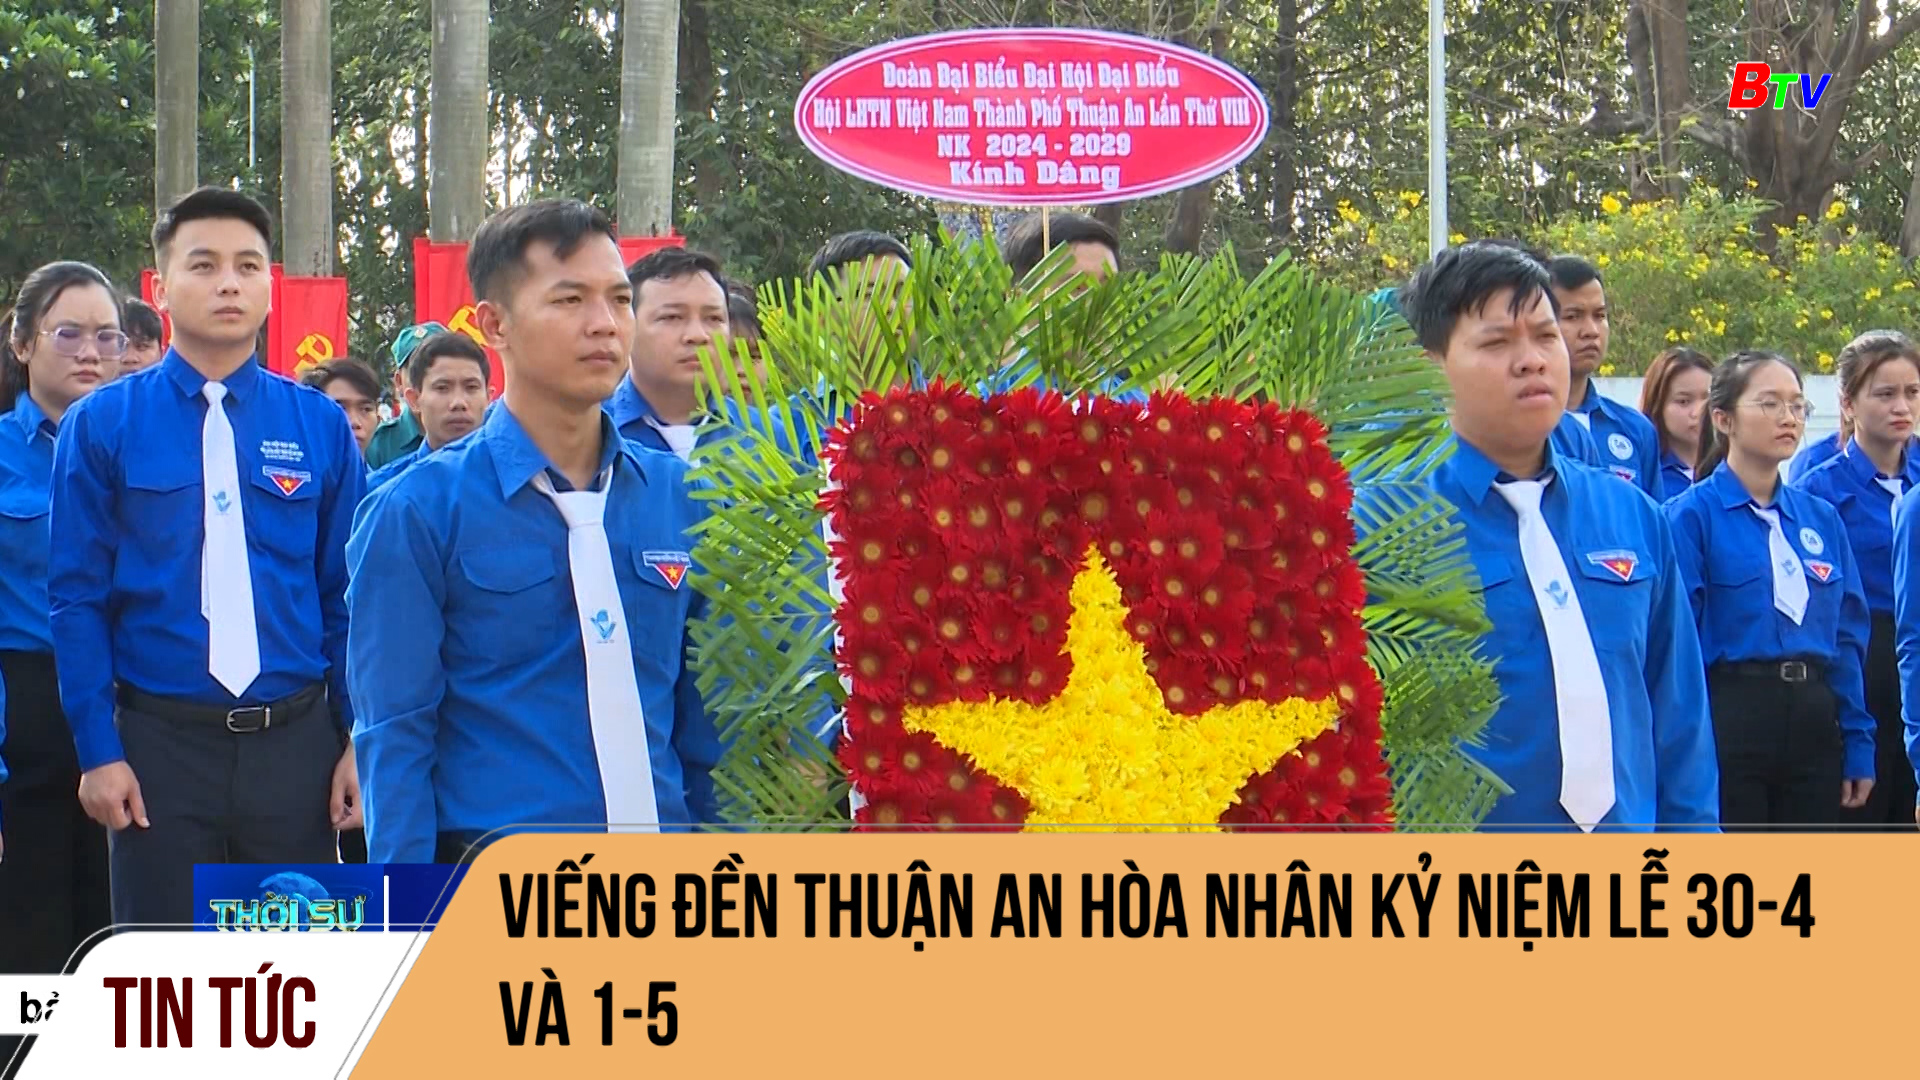 Viếng đền Thuận An Hòa nhân kỷ niệm Lễ 30-4 và 1-5